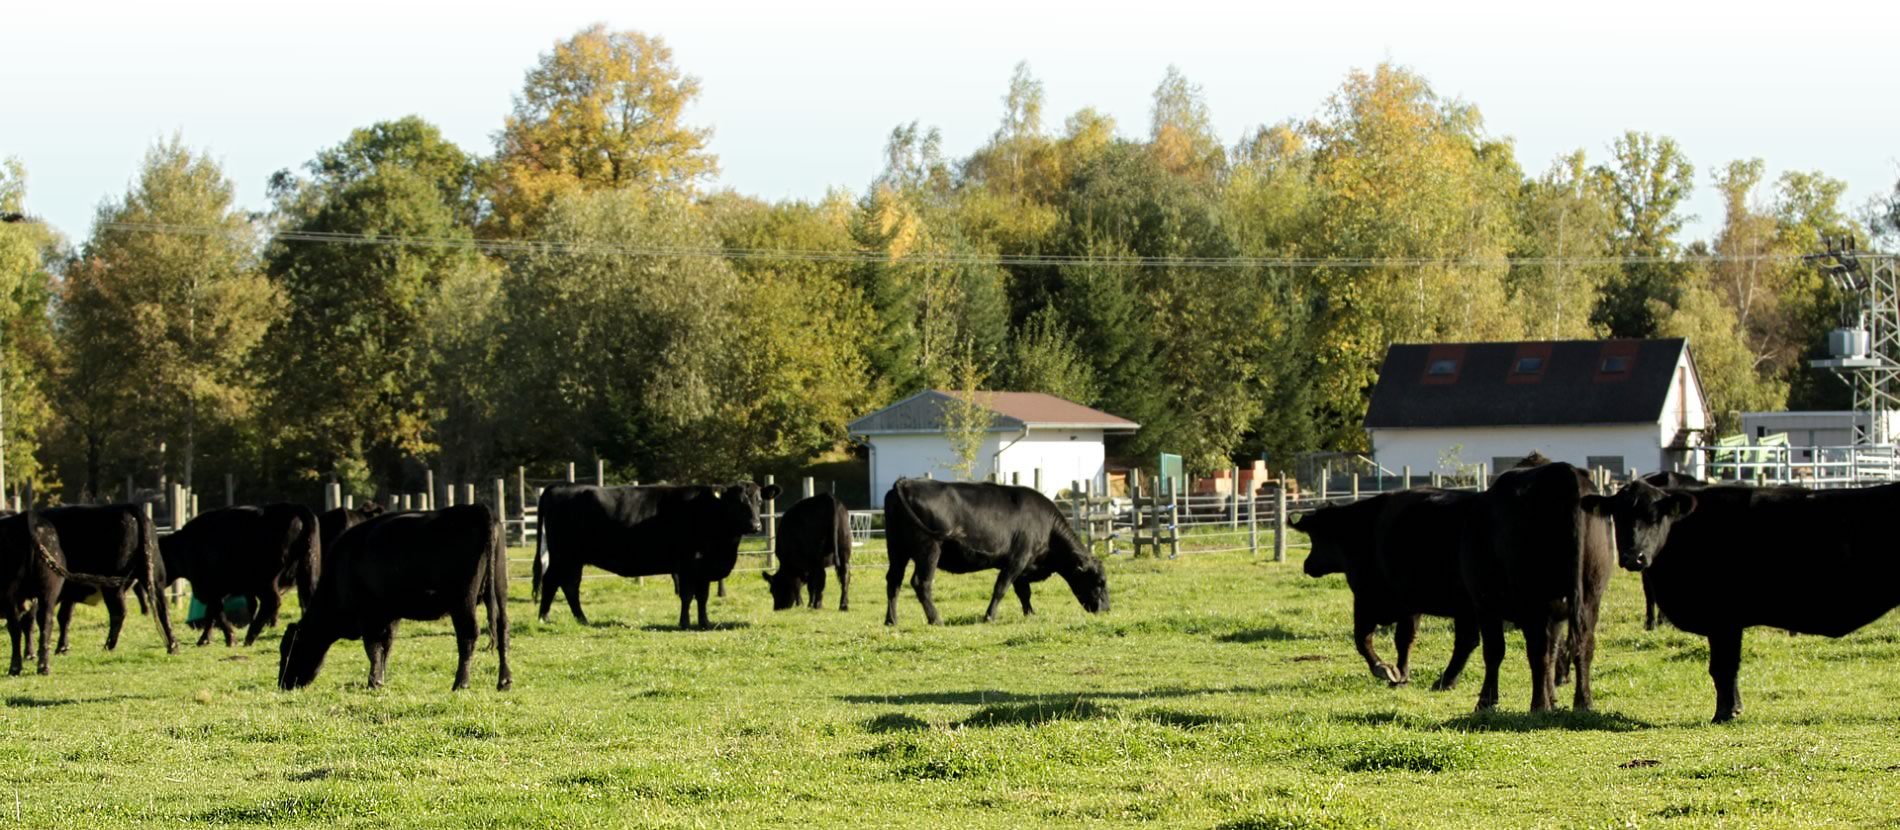 Farma Janovka - prodej živých zvířat, prodej kvalitního vepřového a hovězího masa